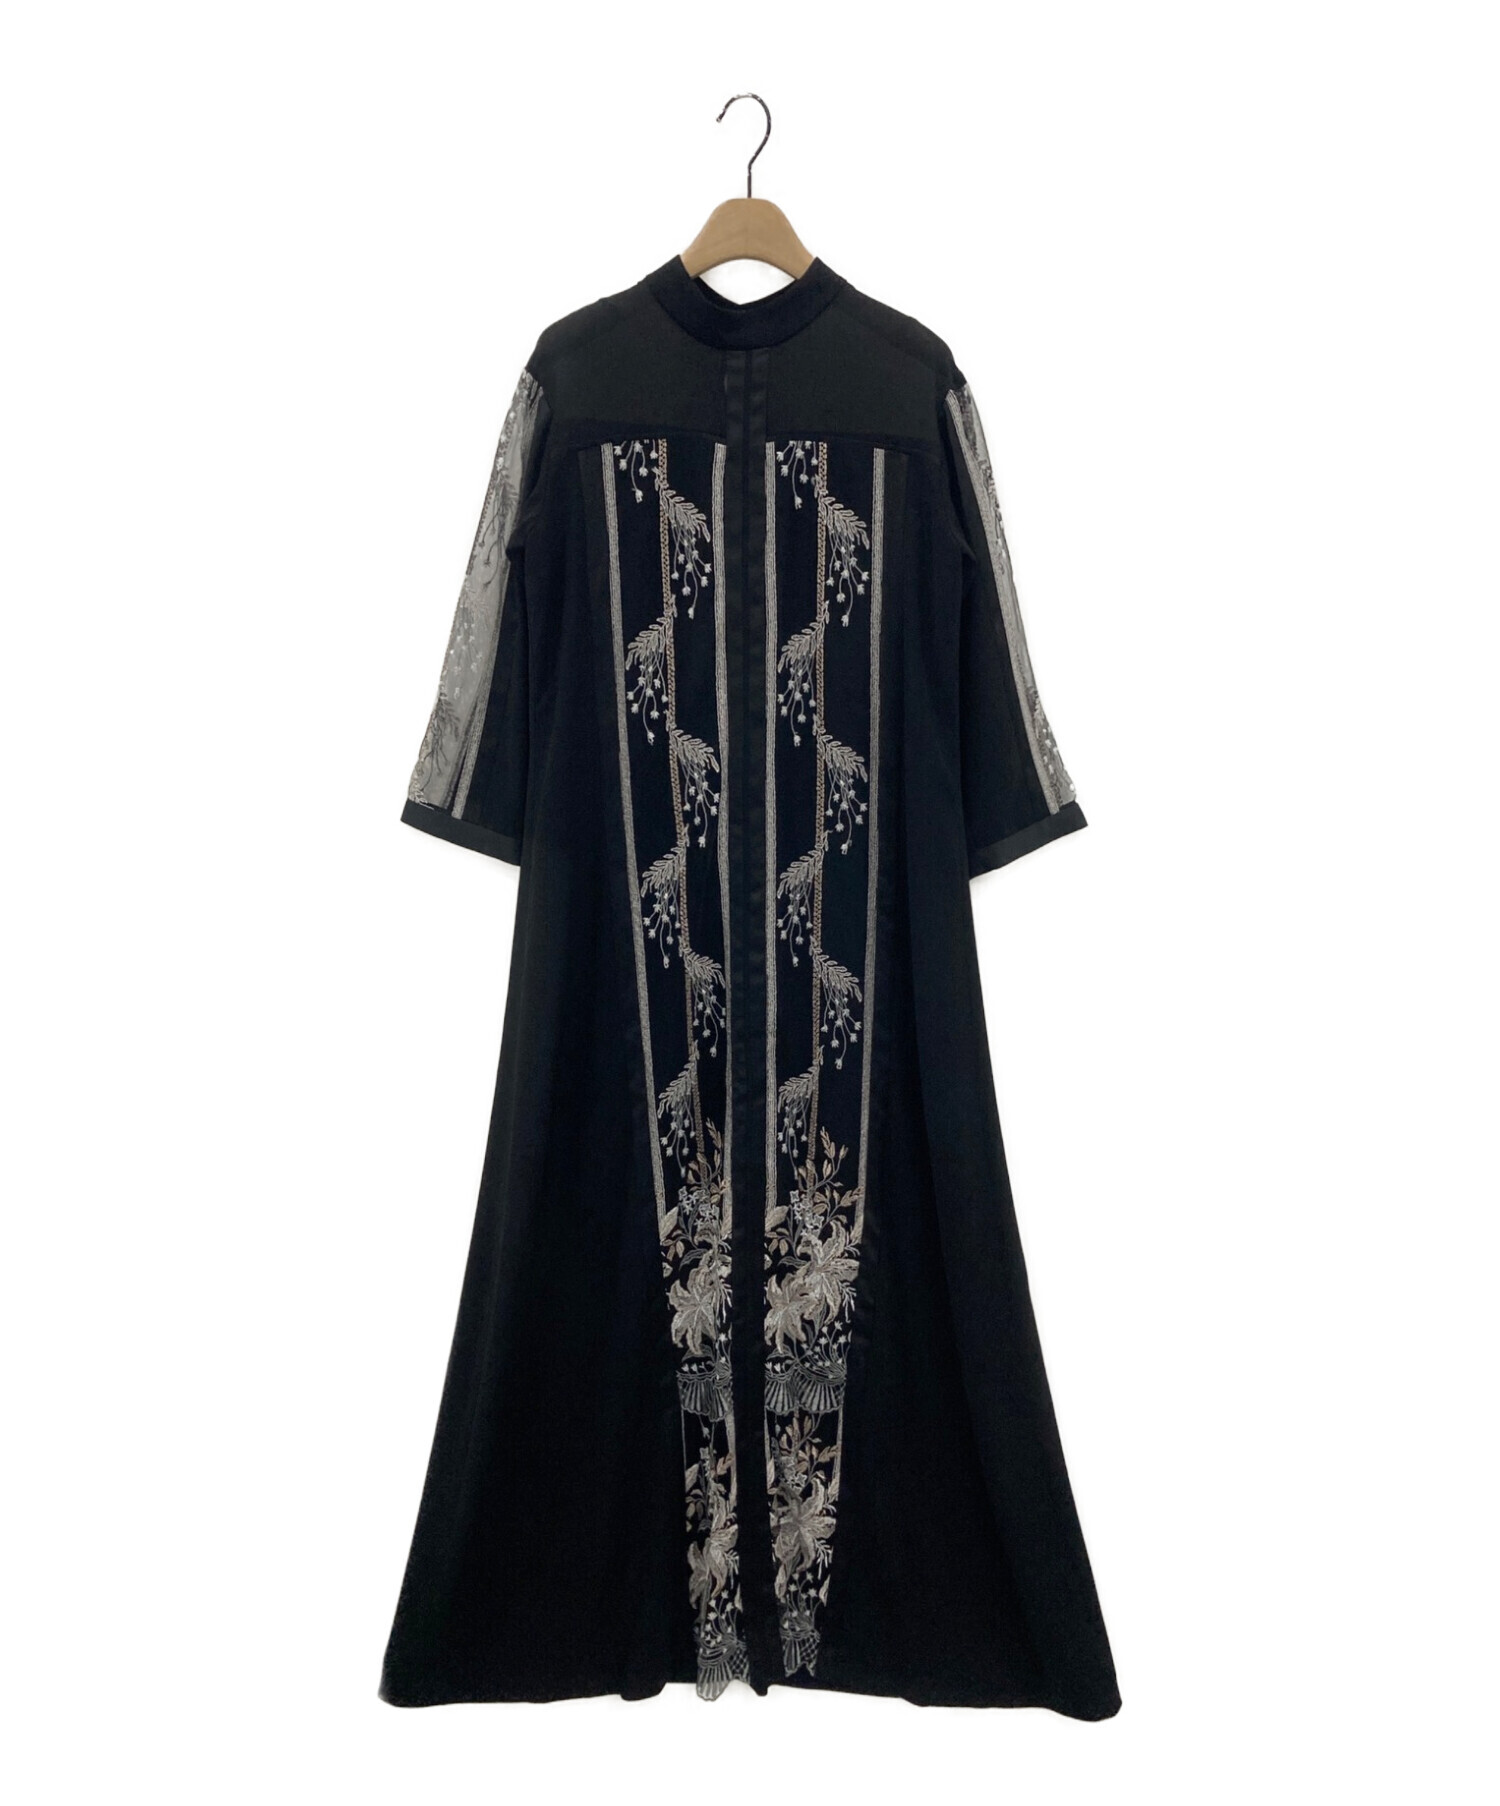 MURRAL (ミューラル) Framed flower dress ブラック サイズ:2